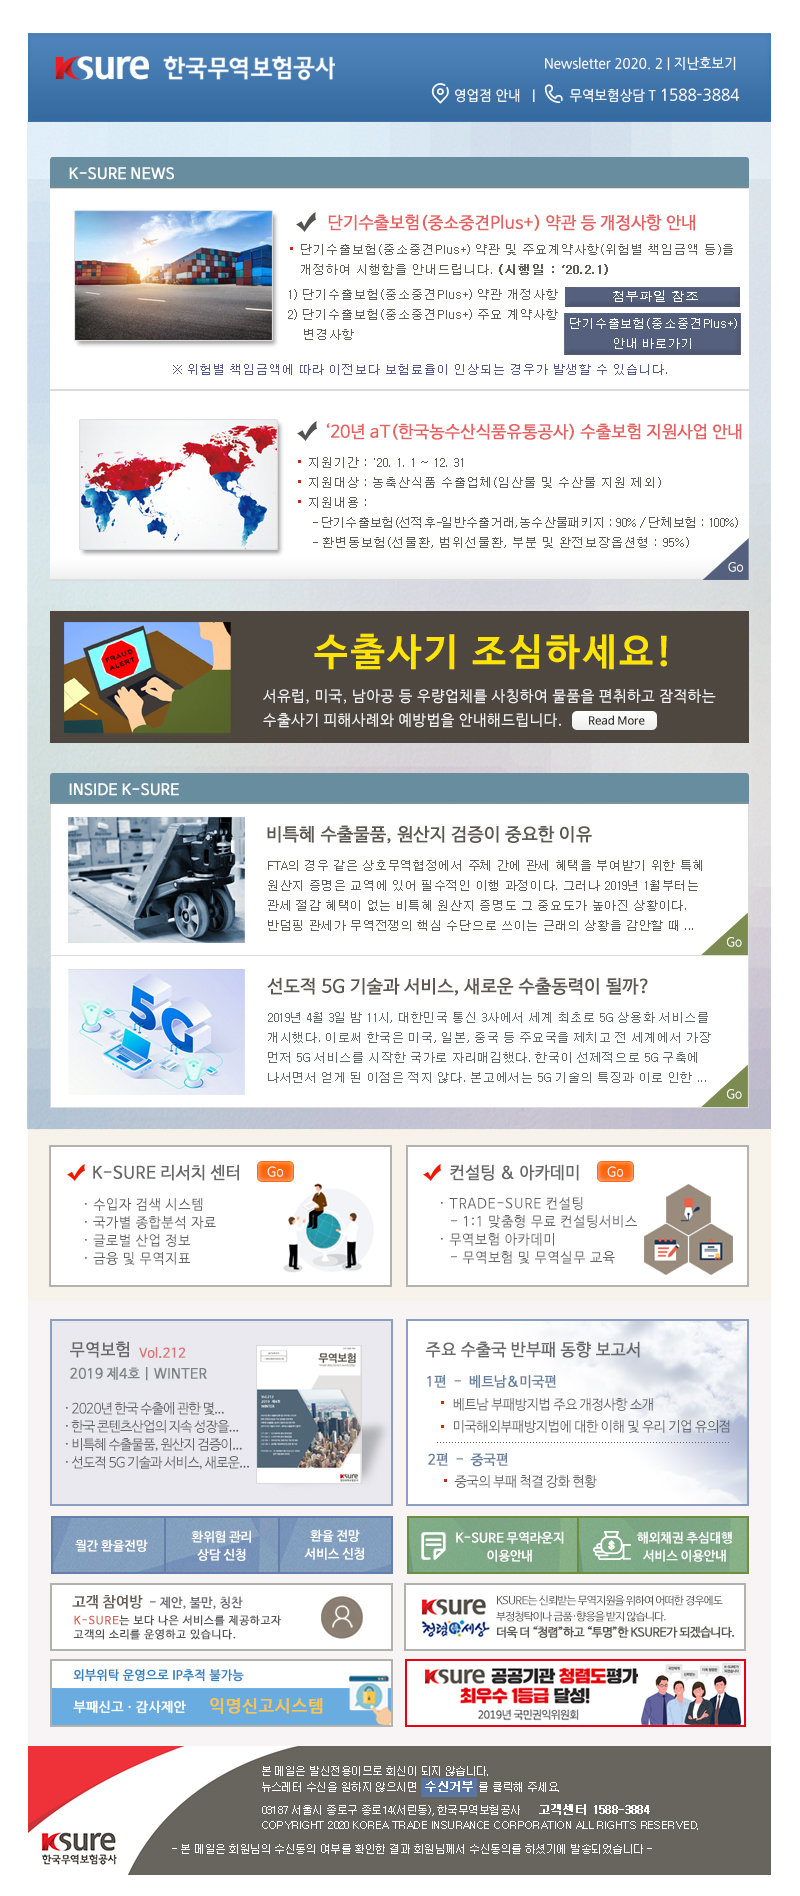 한국무역보험공사에서 보내드리는 2020년 2월 뉴스레터입니다.